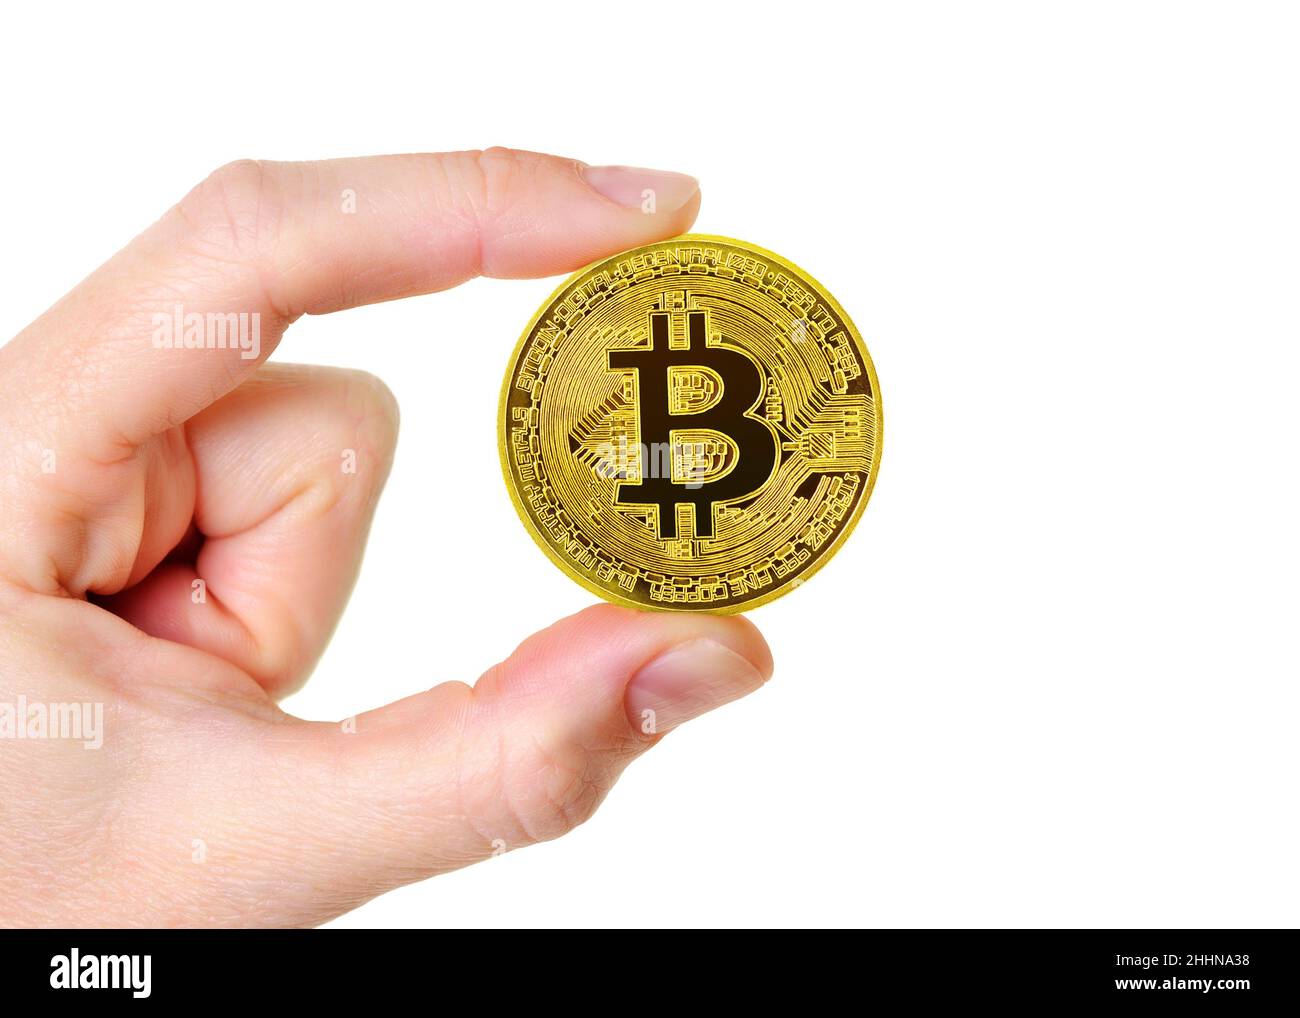 Moneda de criptomoneda Bitcoin sostenida contra un fondo blanco Foto de stock